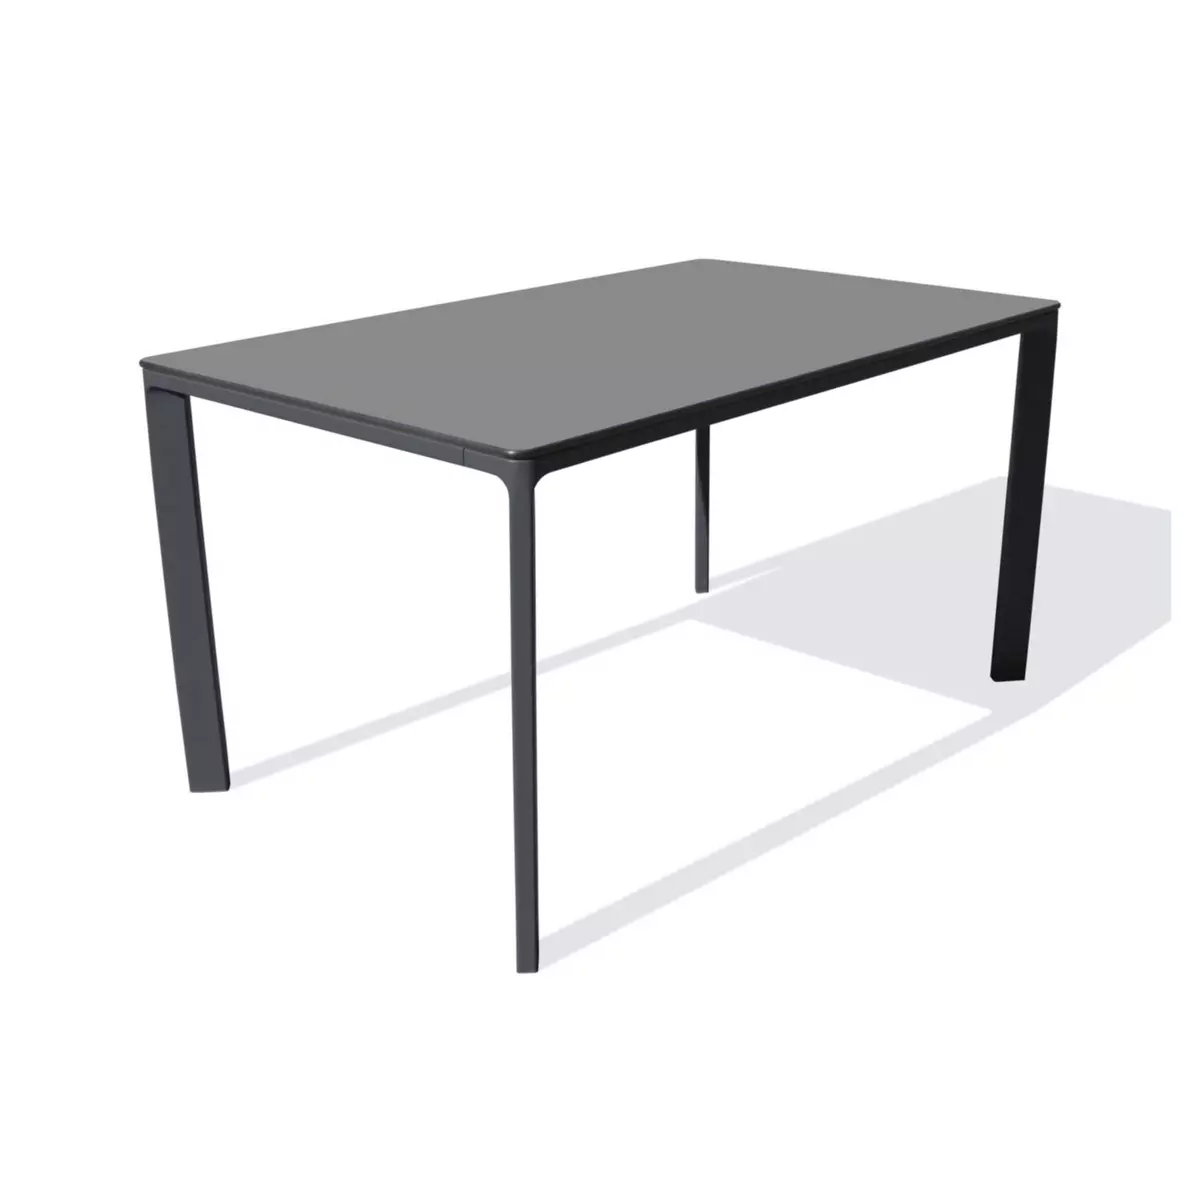 DCB GARDEN Table de jardin rectangulaire - 4/6 places - Aluminium laqué et peinture - Anthracite - EPOXY MEET